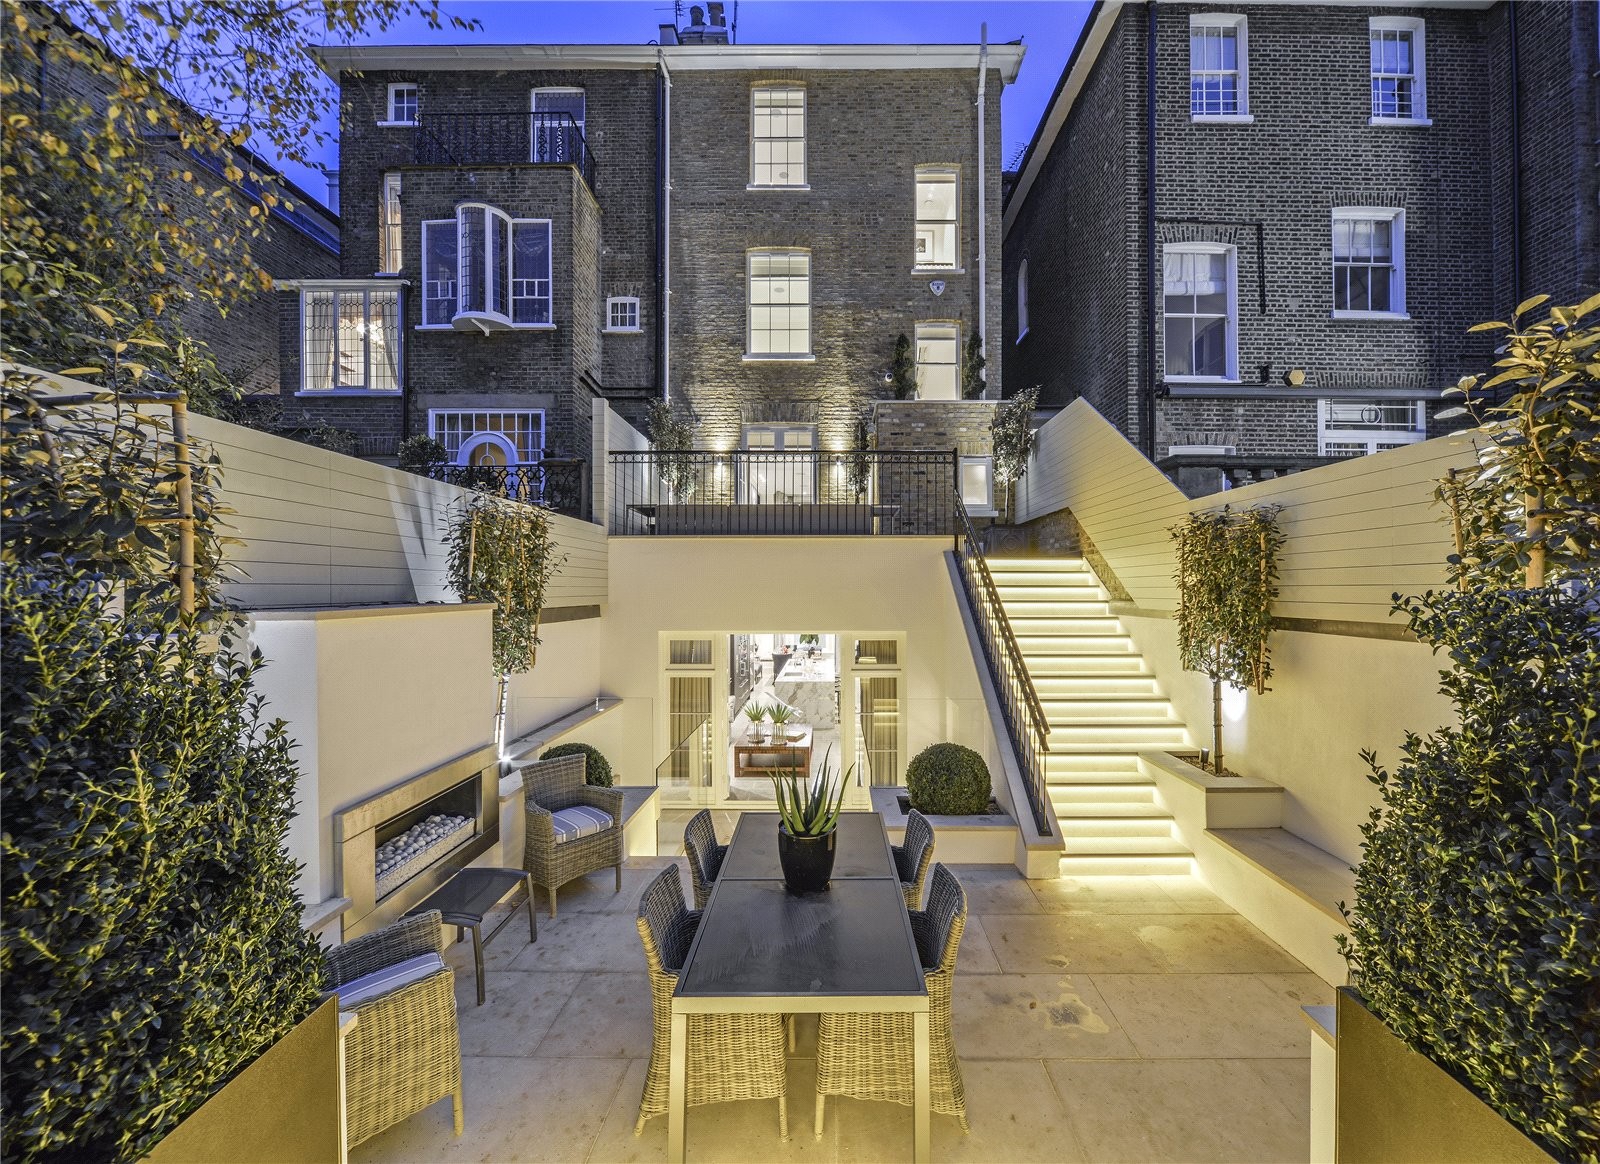 Portal Inmobiliario de Lujo en Londres, presenta chalet adosado de lujo venta en Chelsea, casa exclusiva para comprar y viviendas lujosas en venta en Inglaterra.